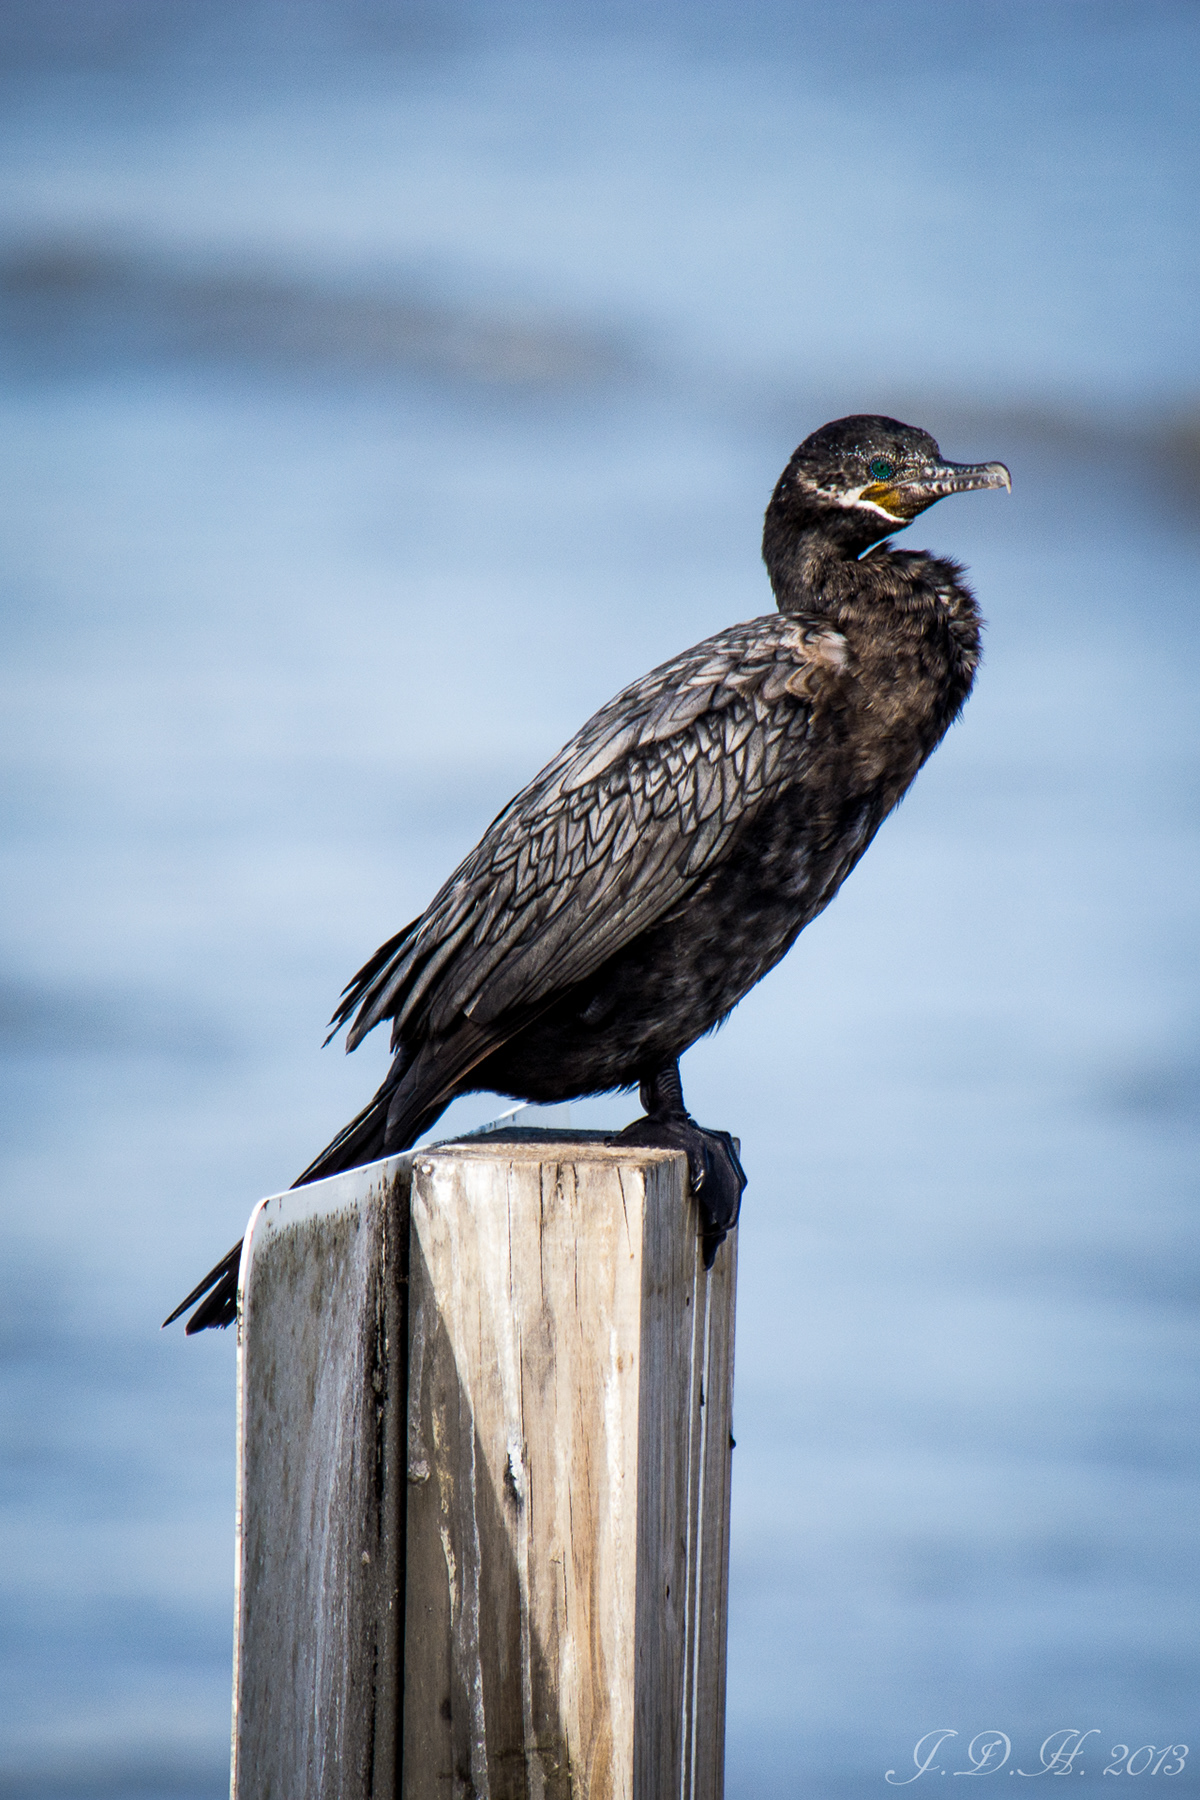 Delaware texas Galveston bear birds bird shorebirds cormorant egret heron seagull shoreline Ocean songbird